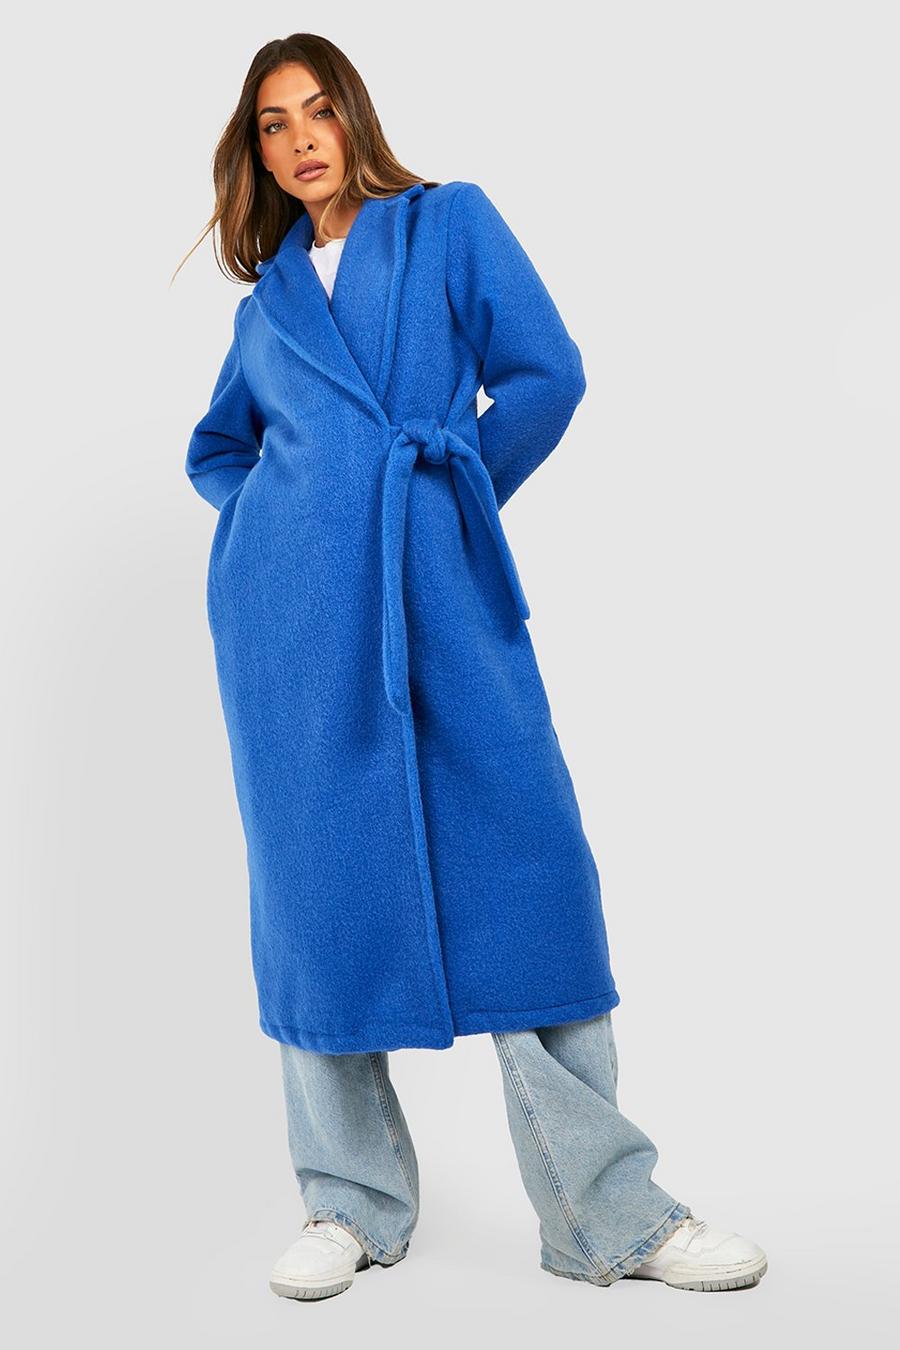 Cobalt azul Wool Look Textured Side Tie Oversized Coat image number 1